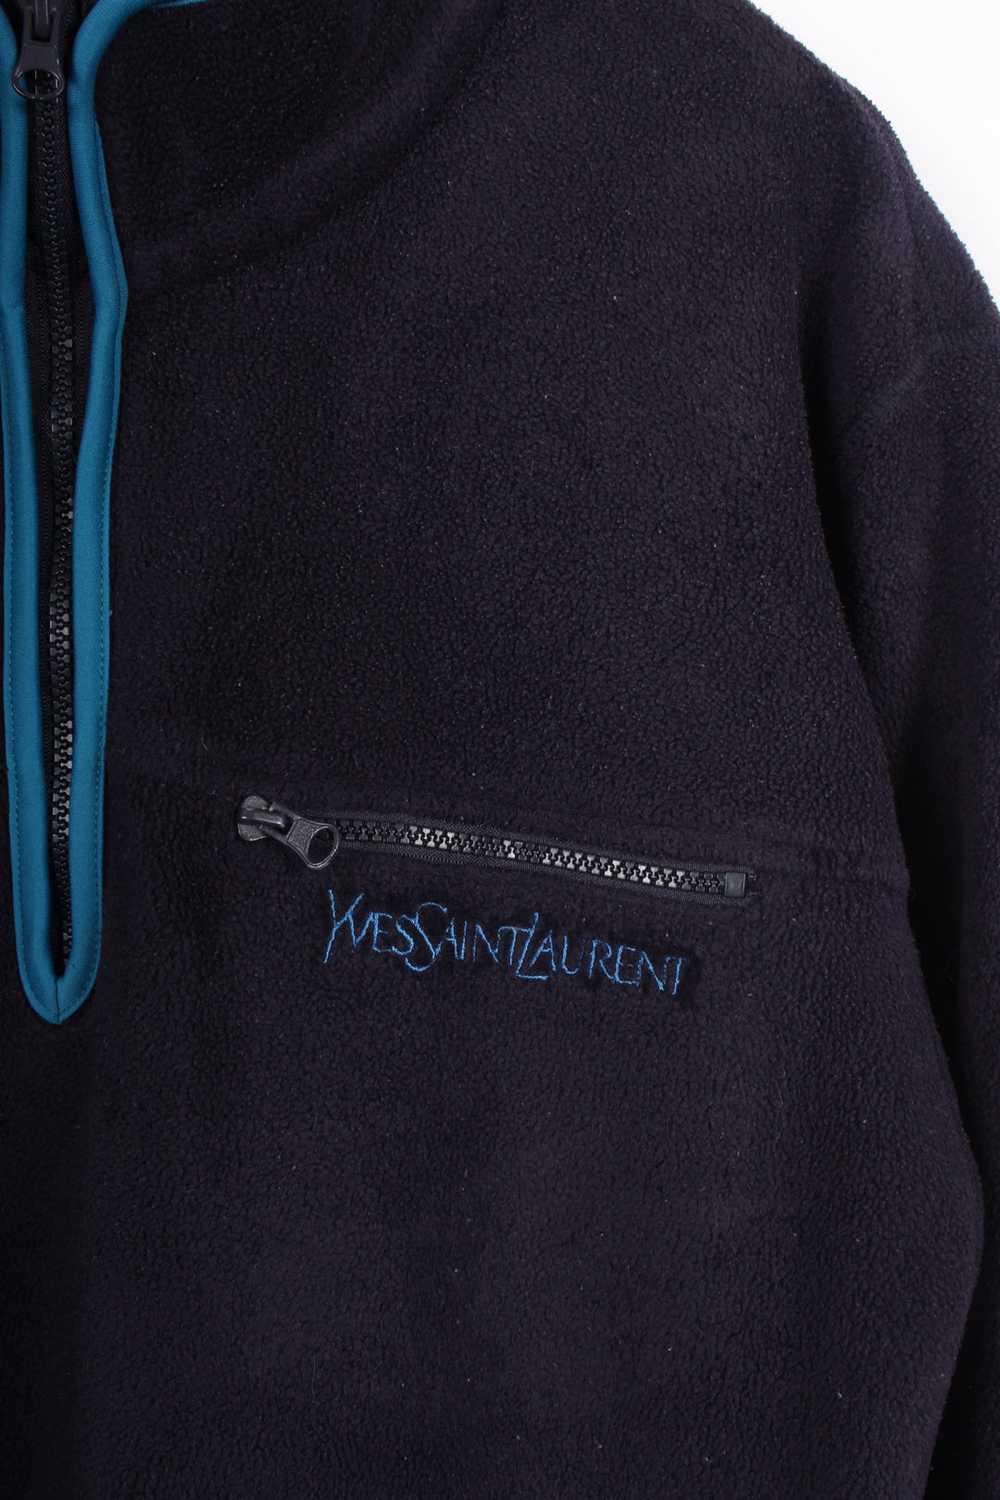 Yves Saint Laurent 1/4 Zip Fleece Navy XL - image 3